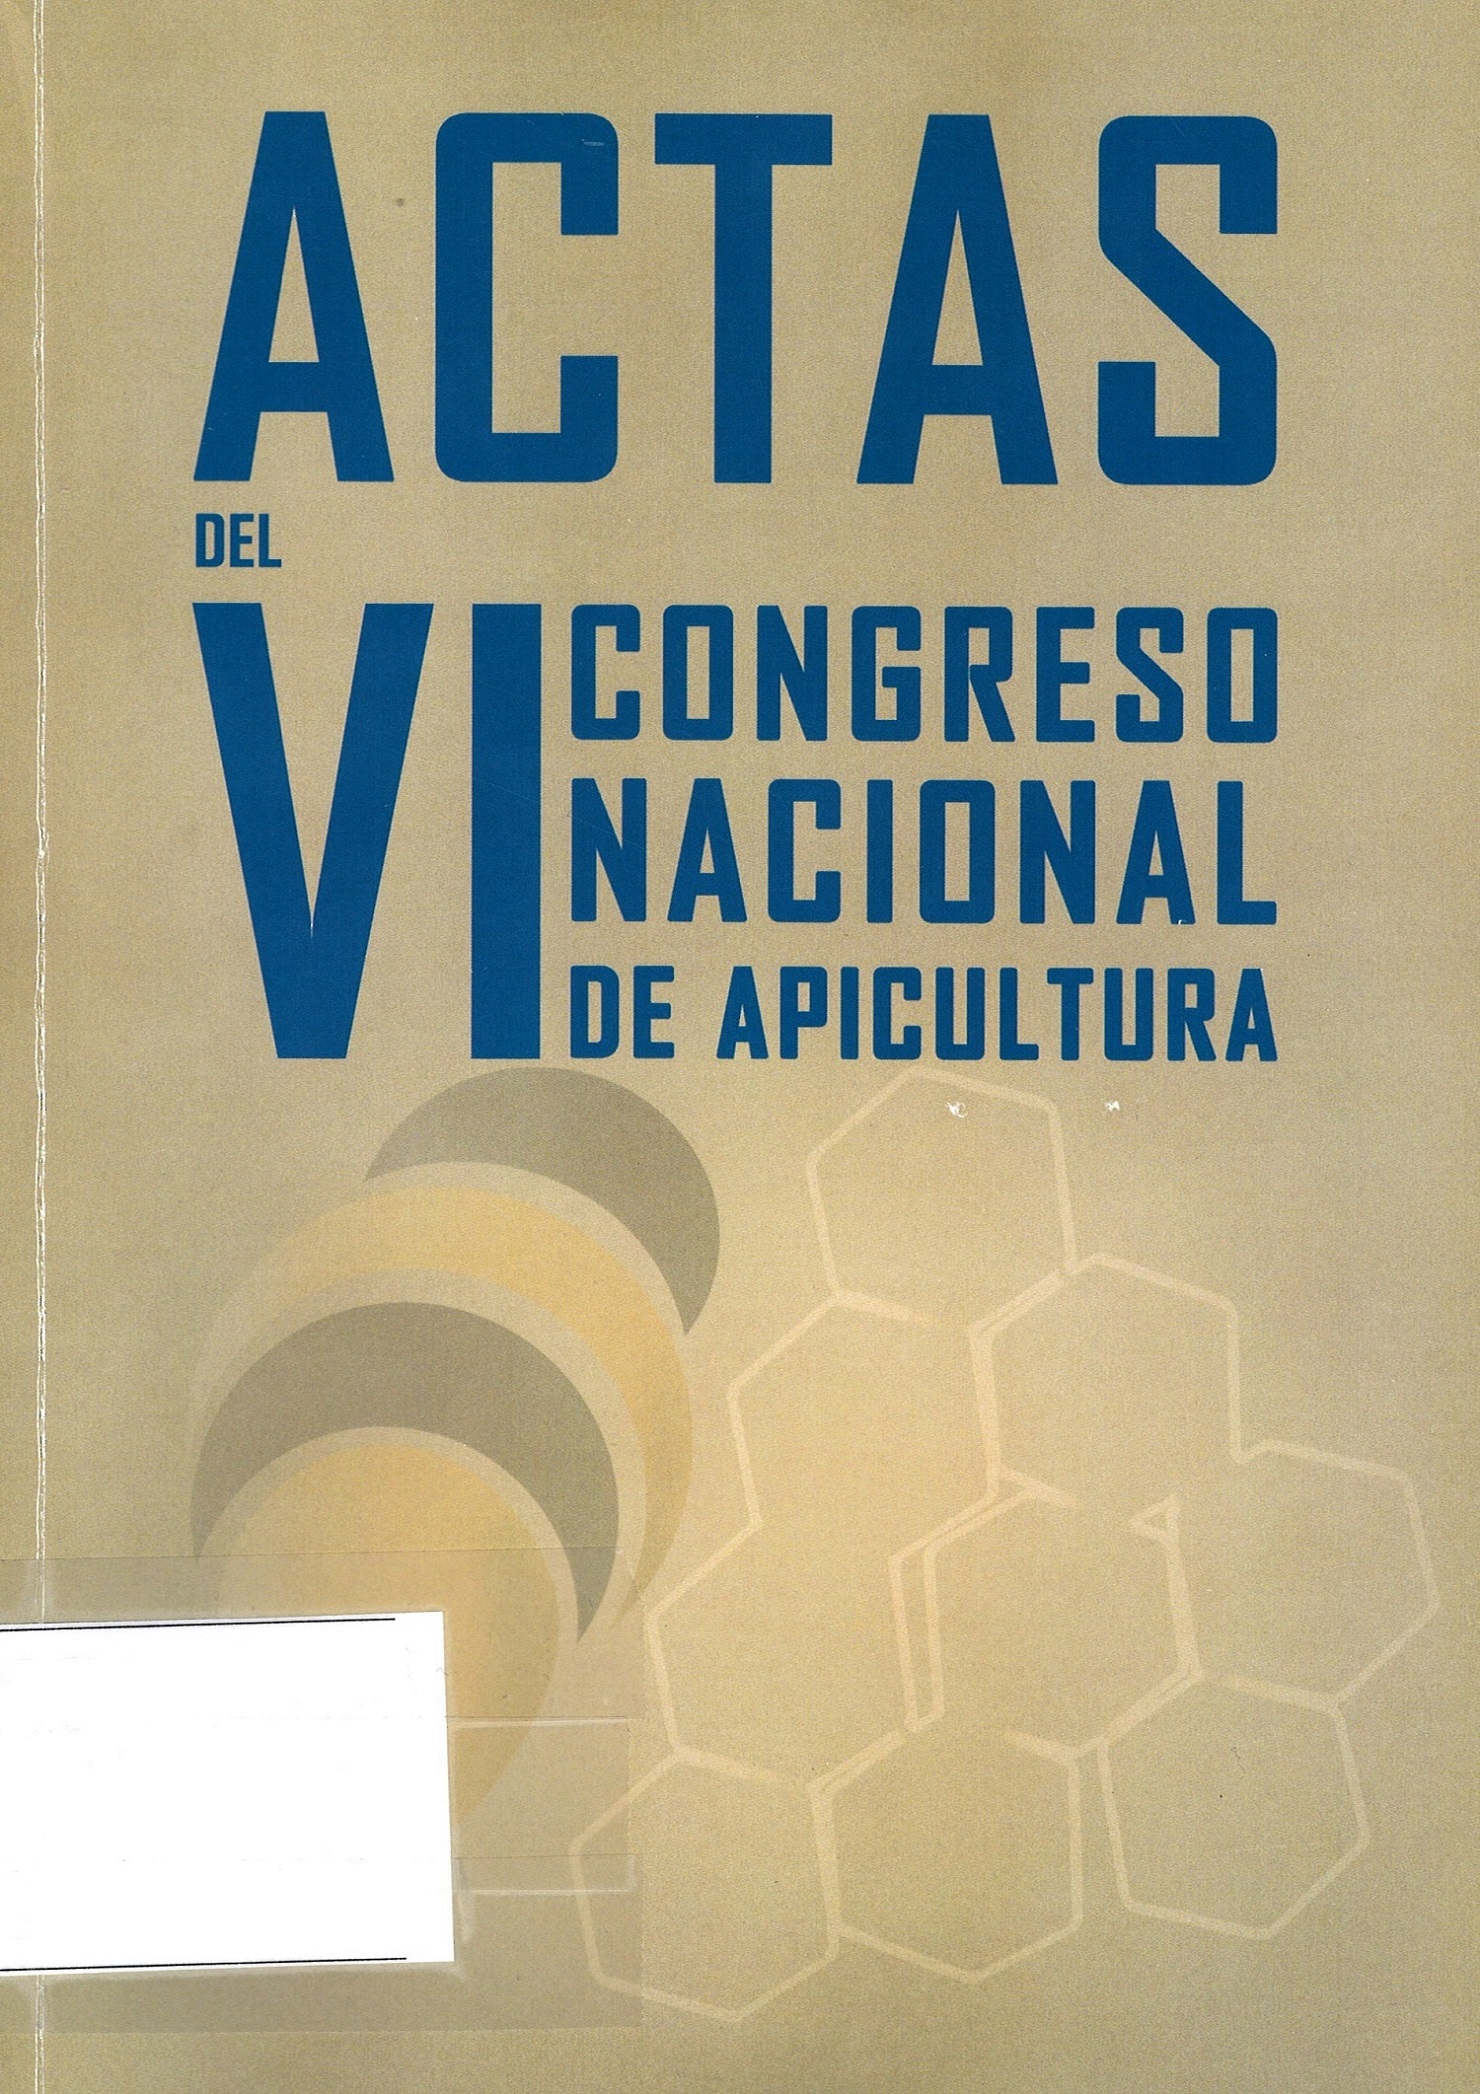 Imagen de portada del libro Actas del VI Congreso Nacional de Apicultura